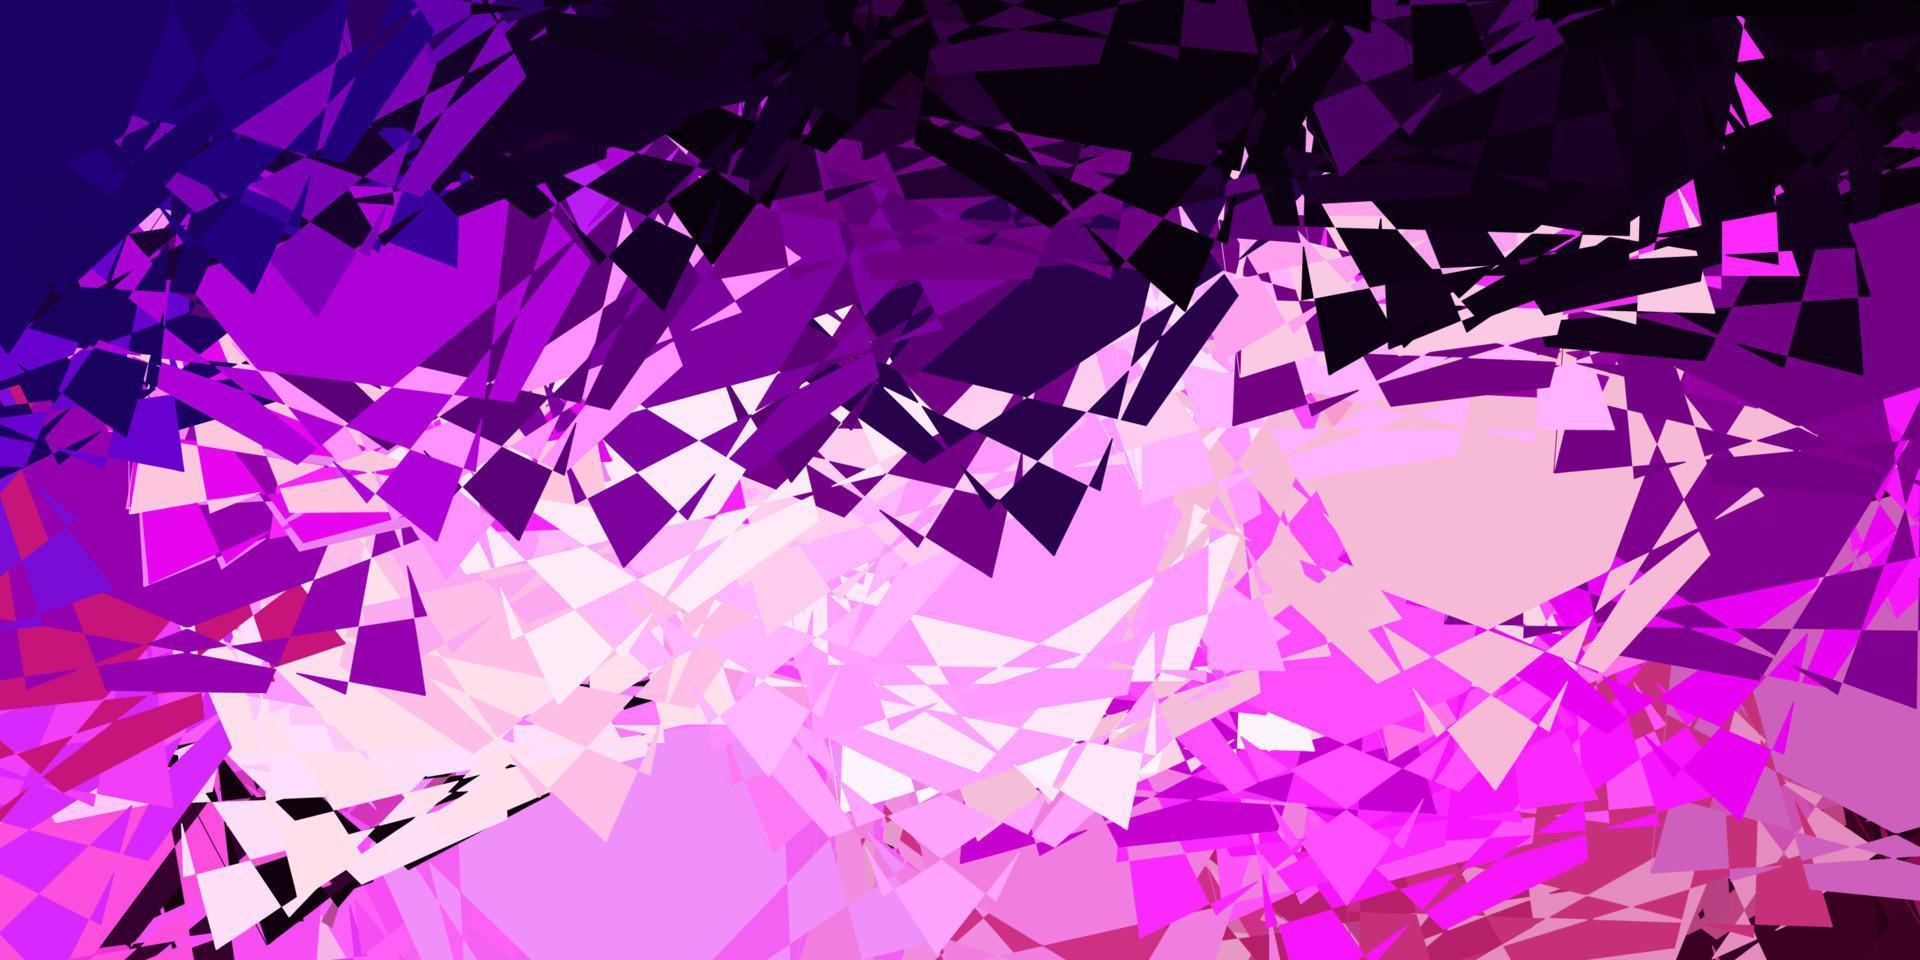 mörk lila, rosa vektormönster med månghörniga former. vektor